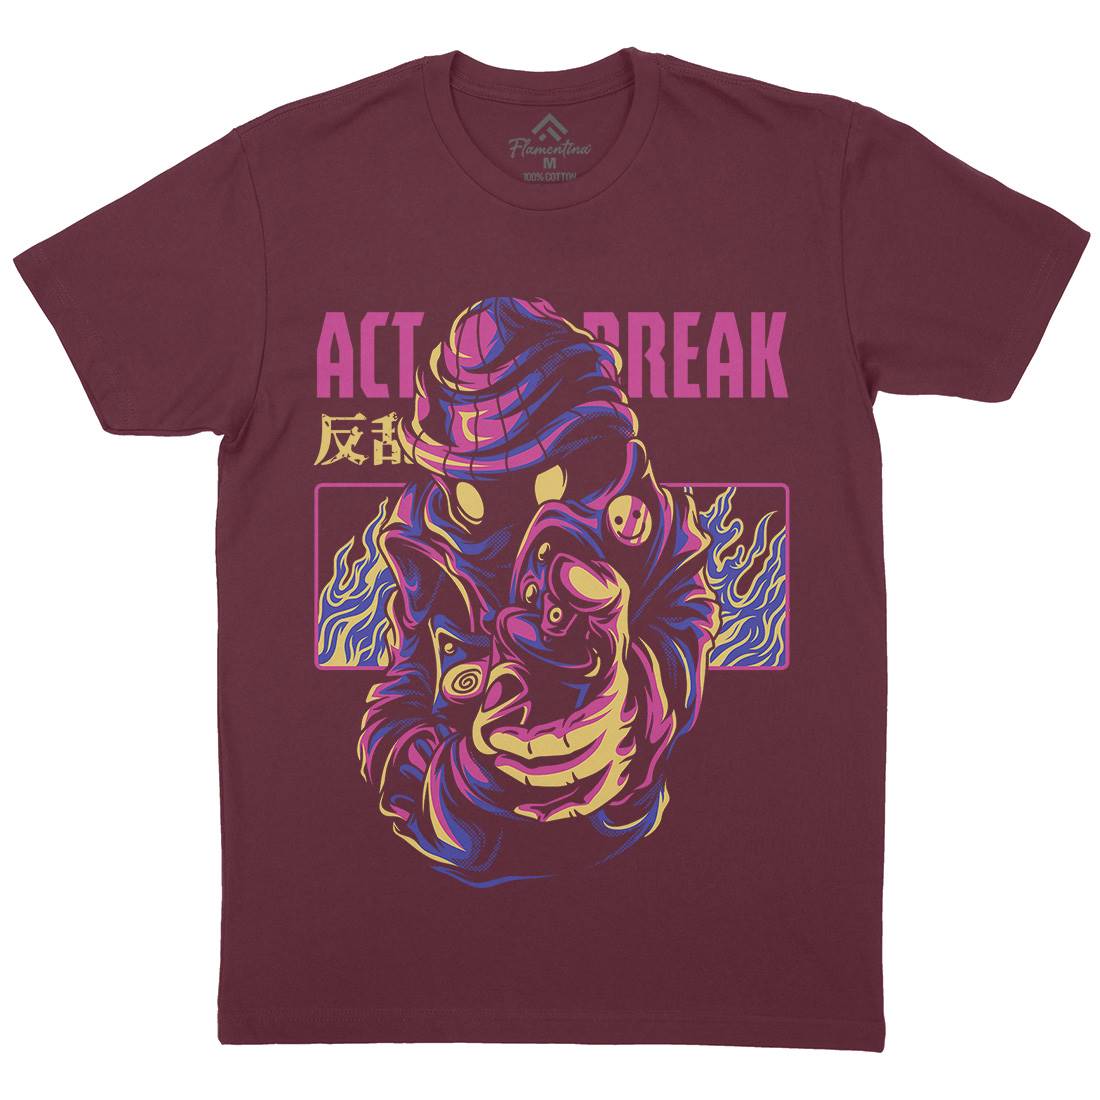 Act Break Mens Organic Crew Neck T-Shirt Graffiti D700